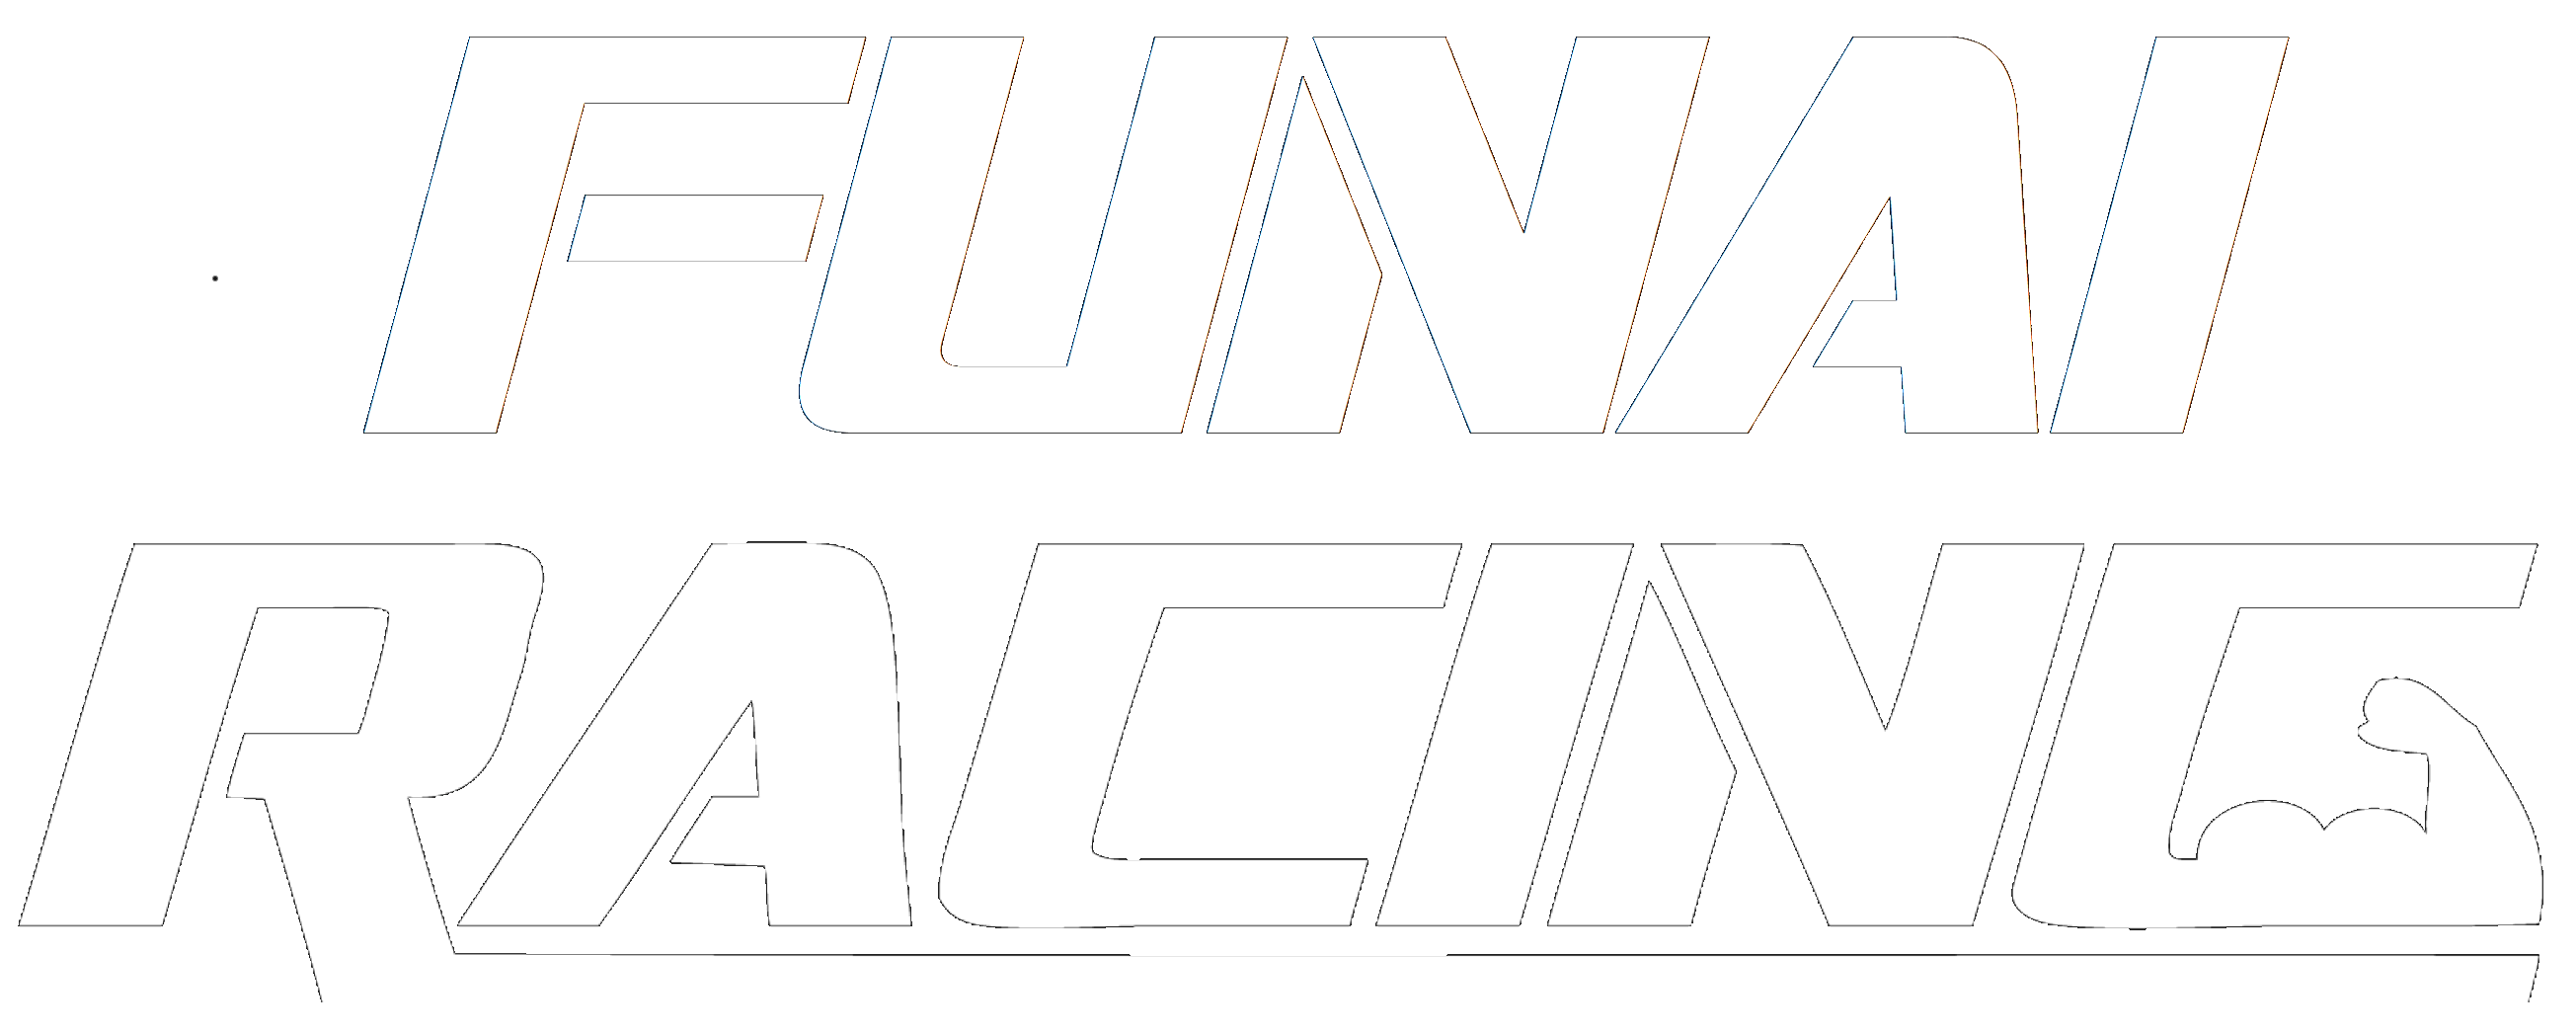 Funai Racing